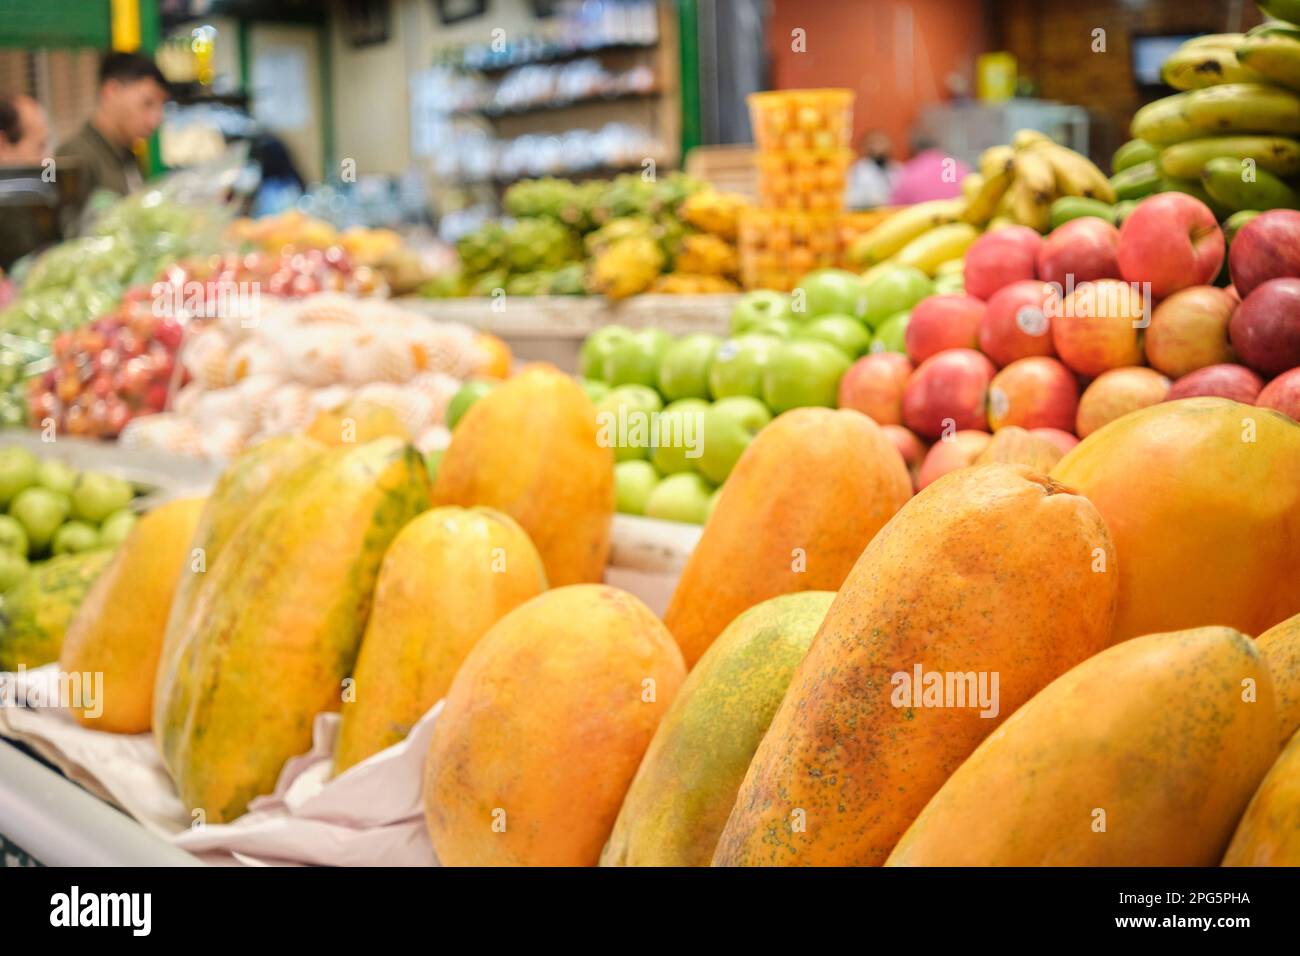 Papayas, patas o papaws y otras frutas tropicales para la venta en un puesto de mercado de verduras. Foto de stock